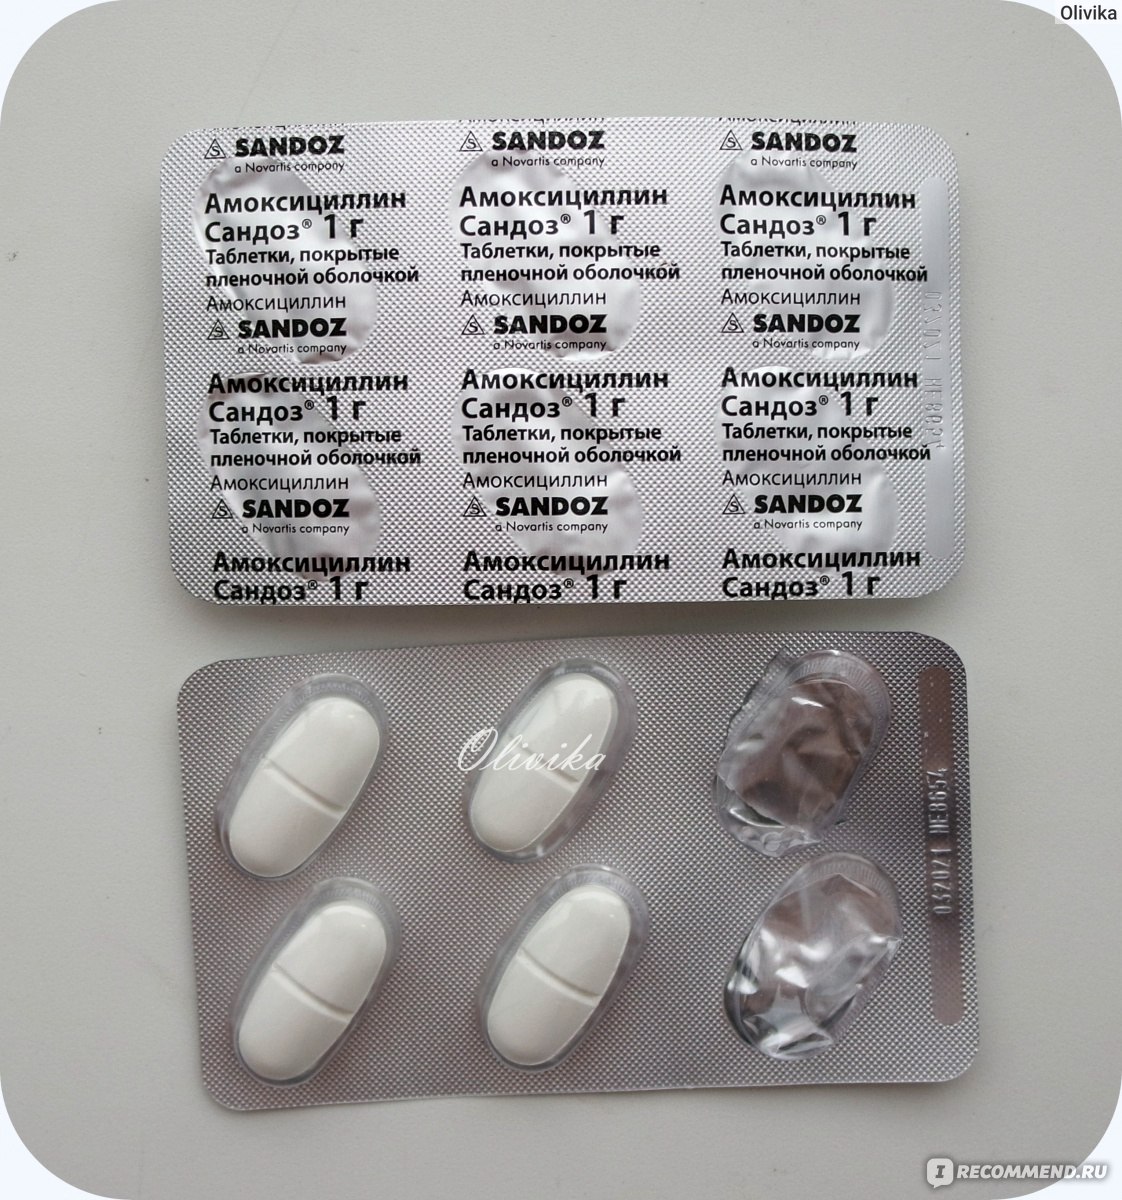 Антибиотики препараты недорогие но эффективные